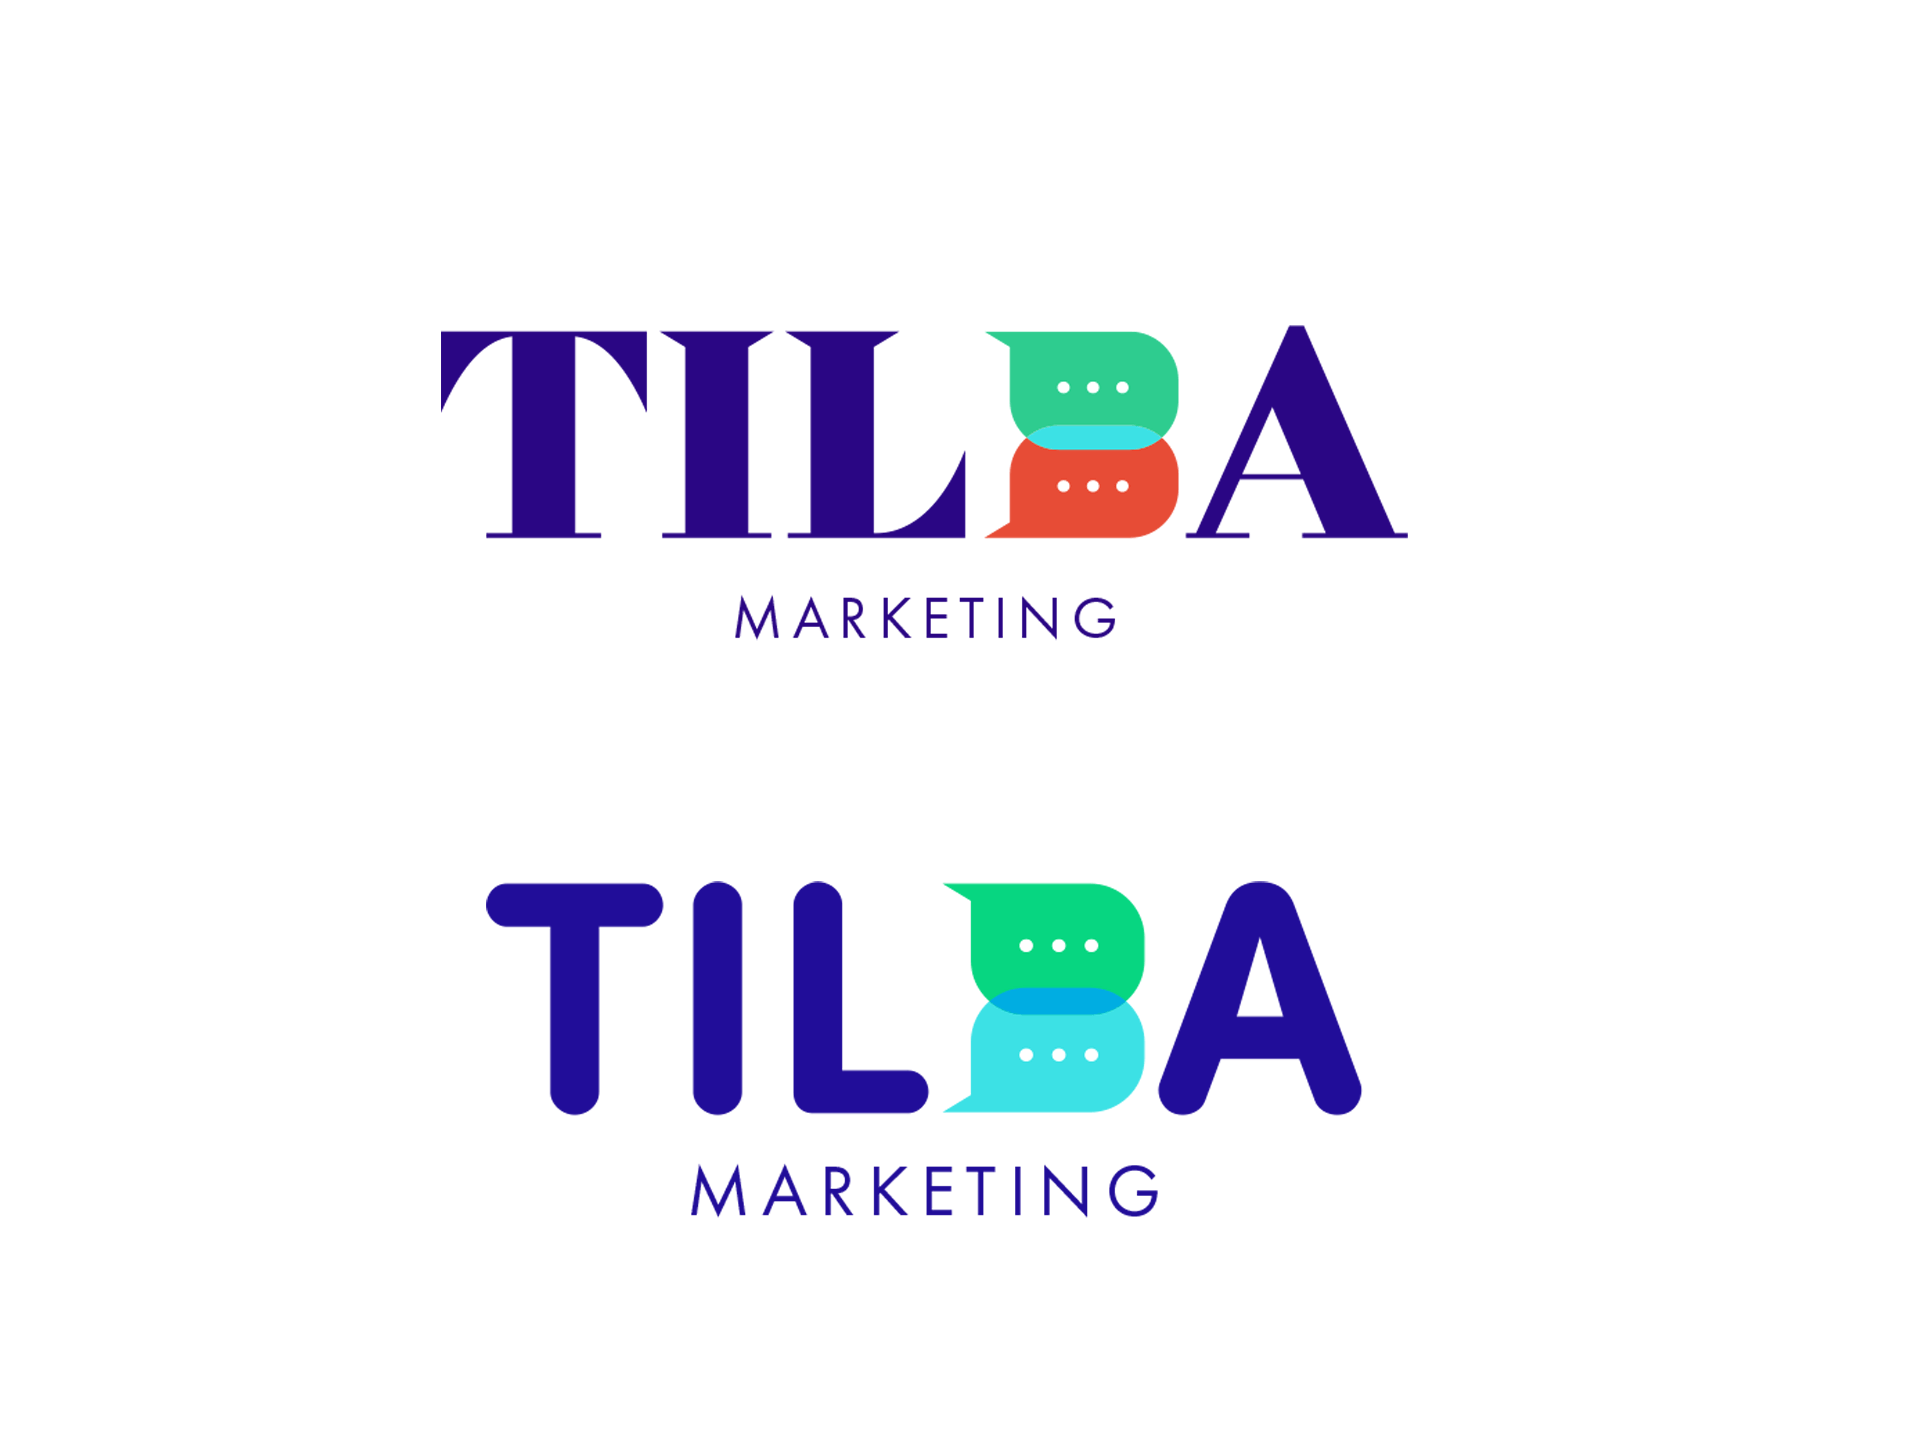 Initial logo design ideas for the Tilba